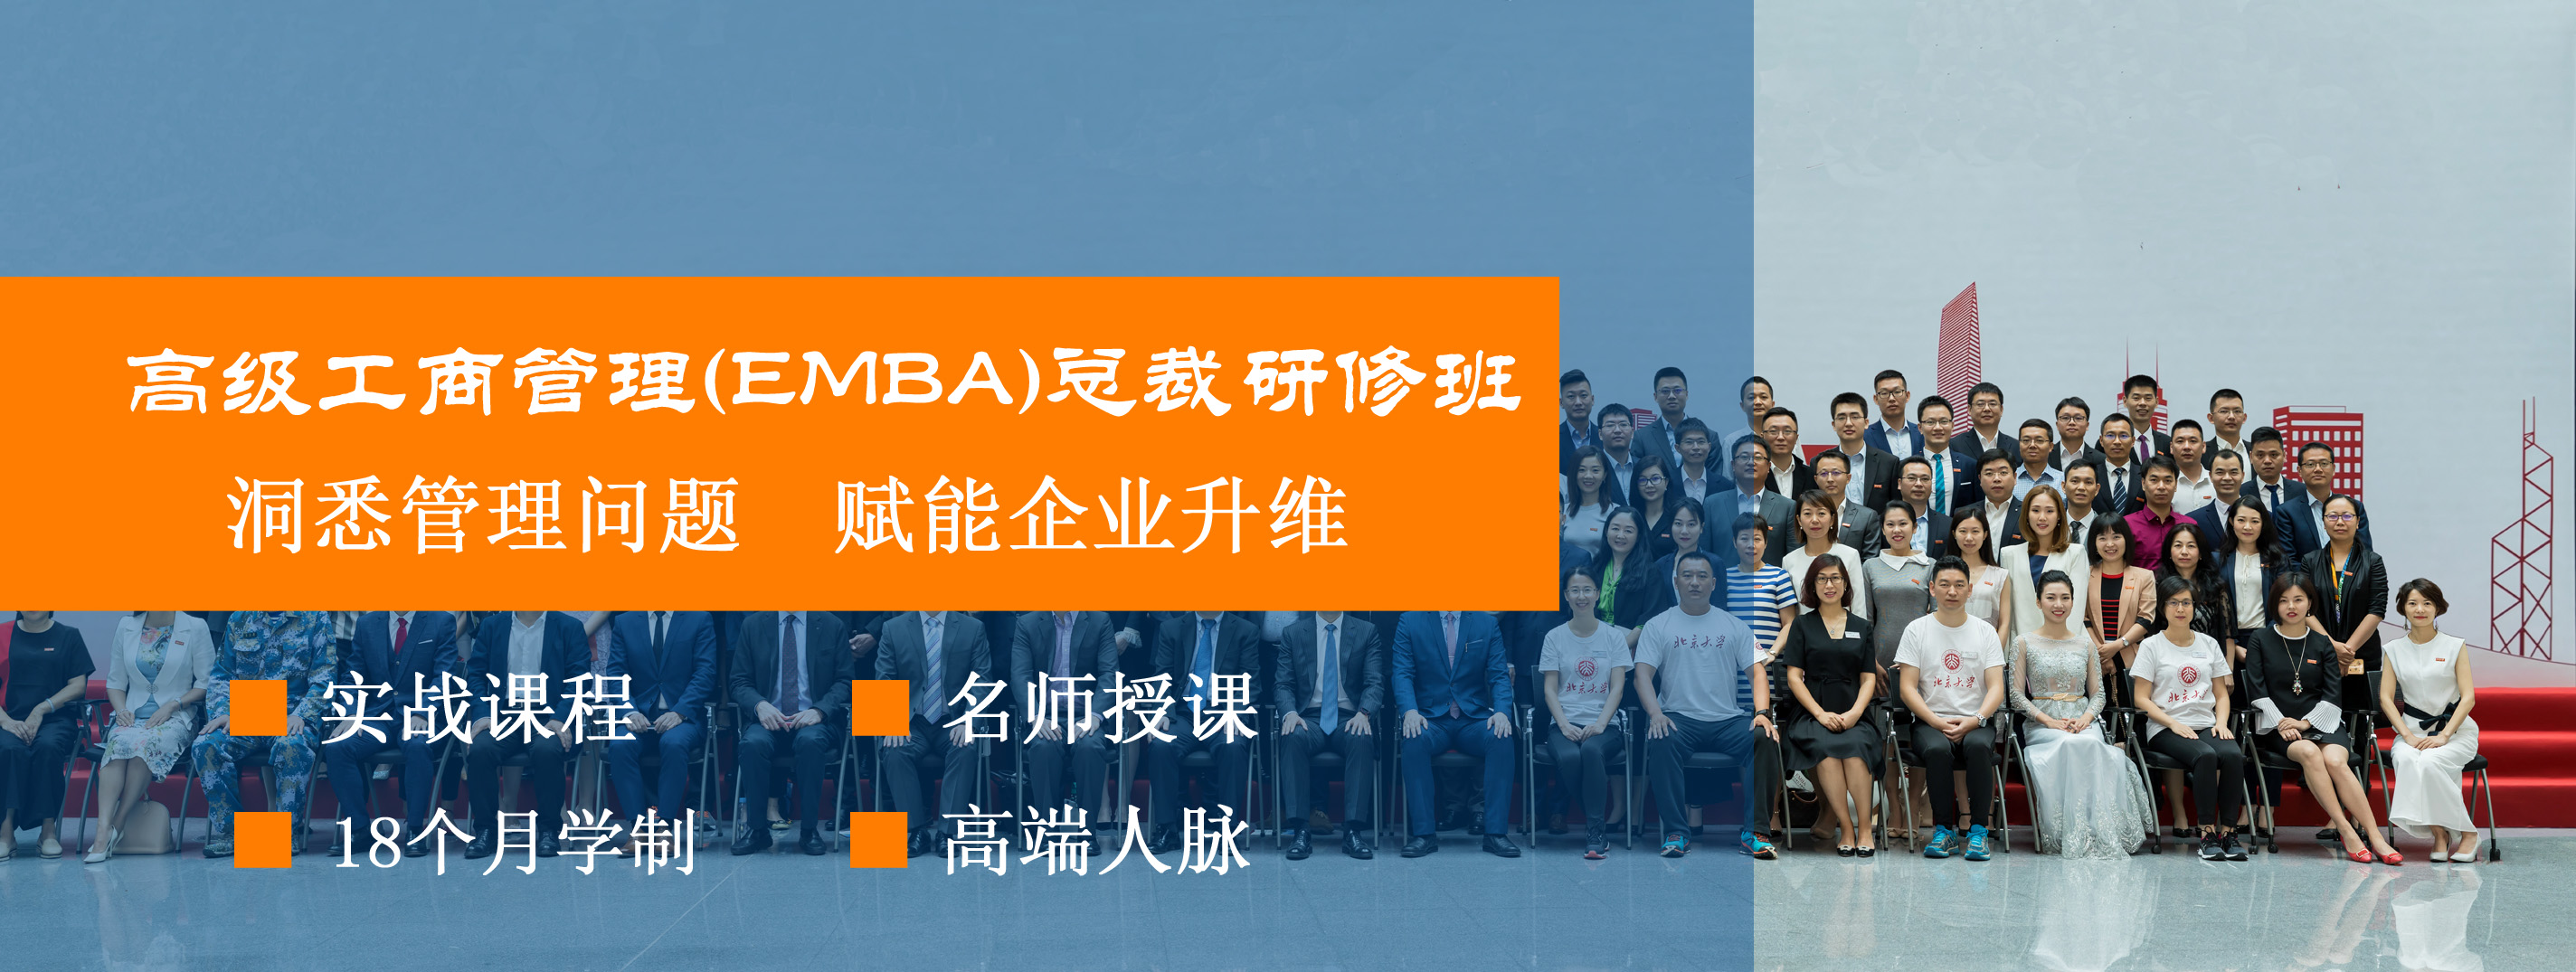 浙江杭州MBA总裁班项目